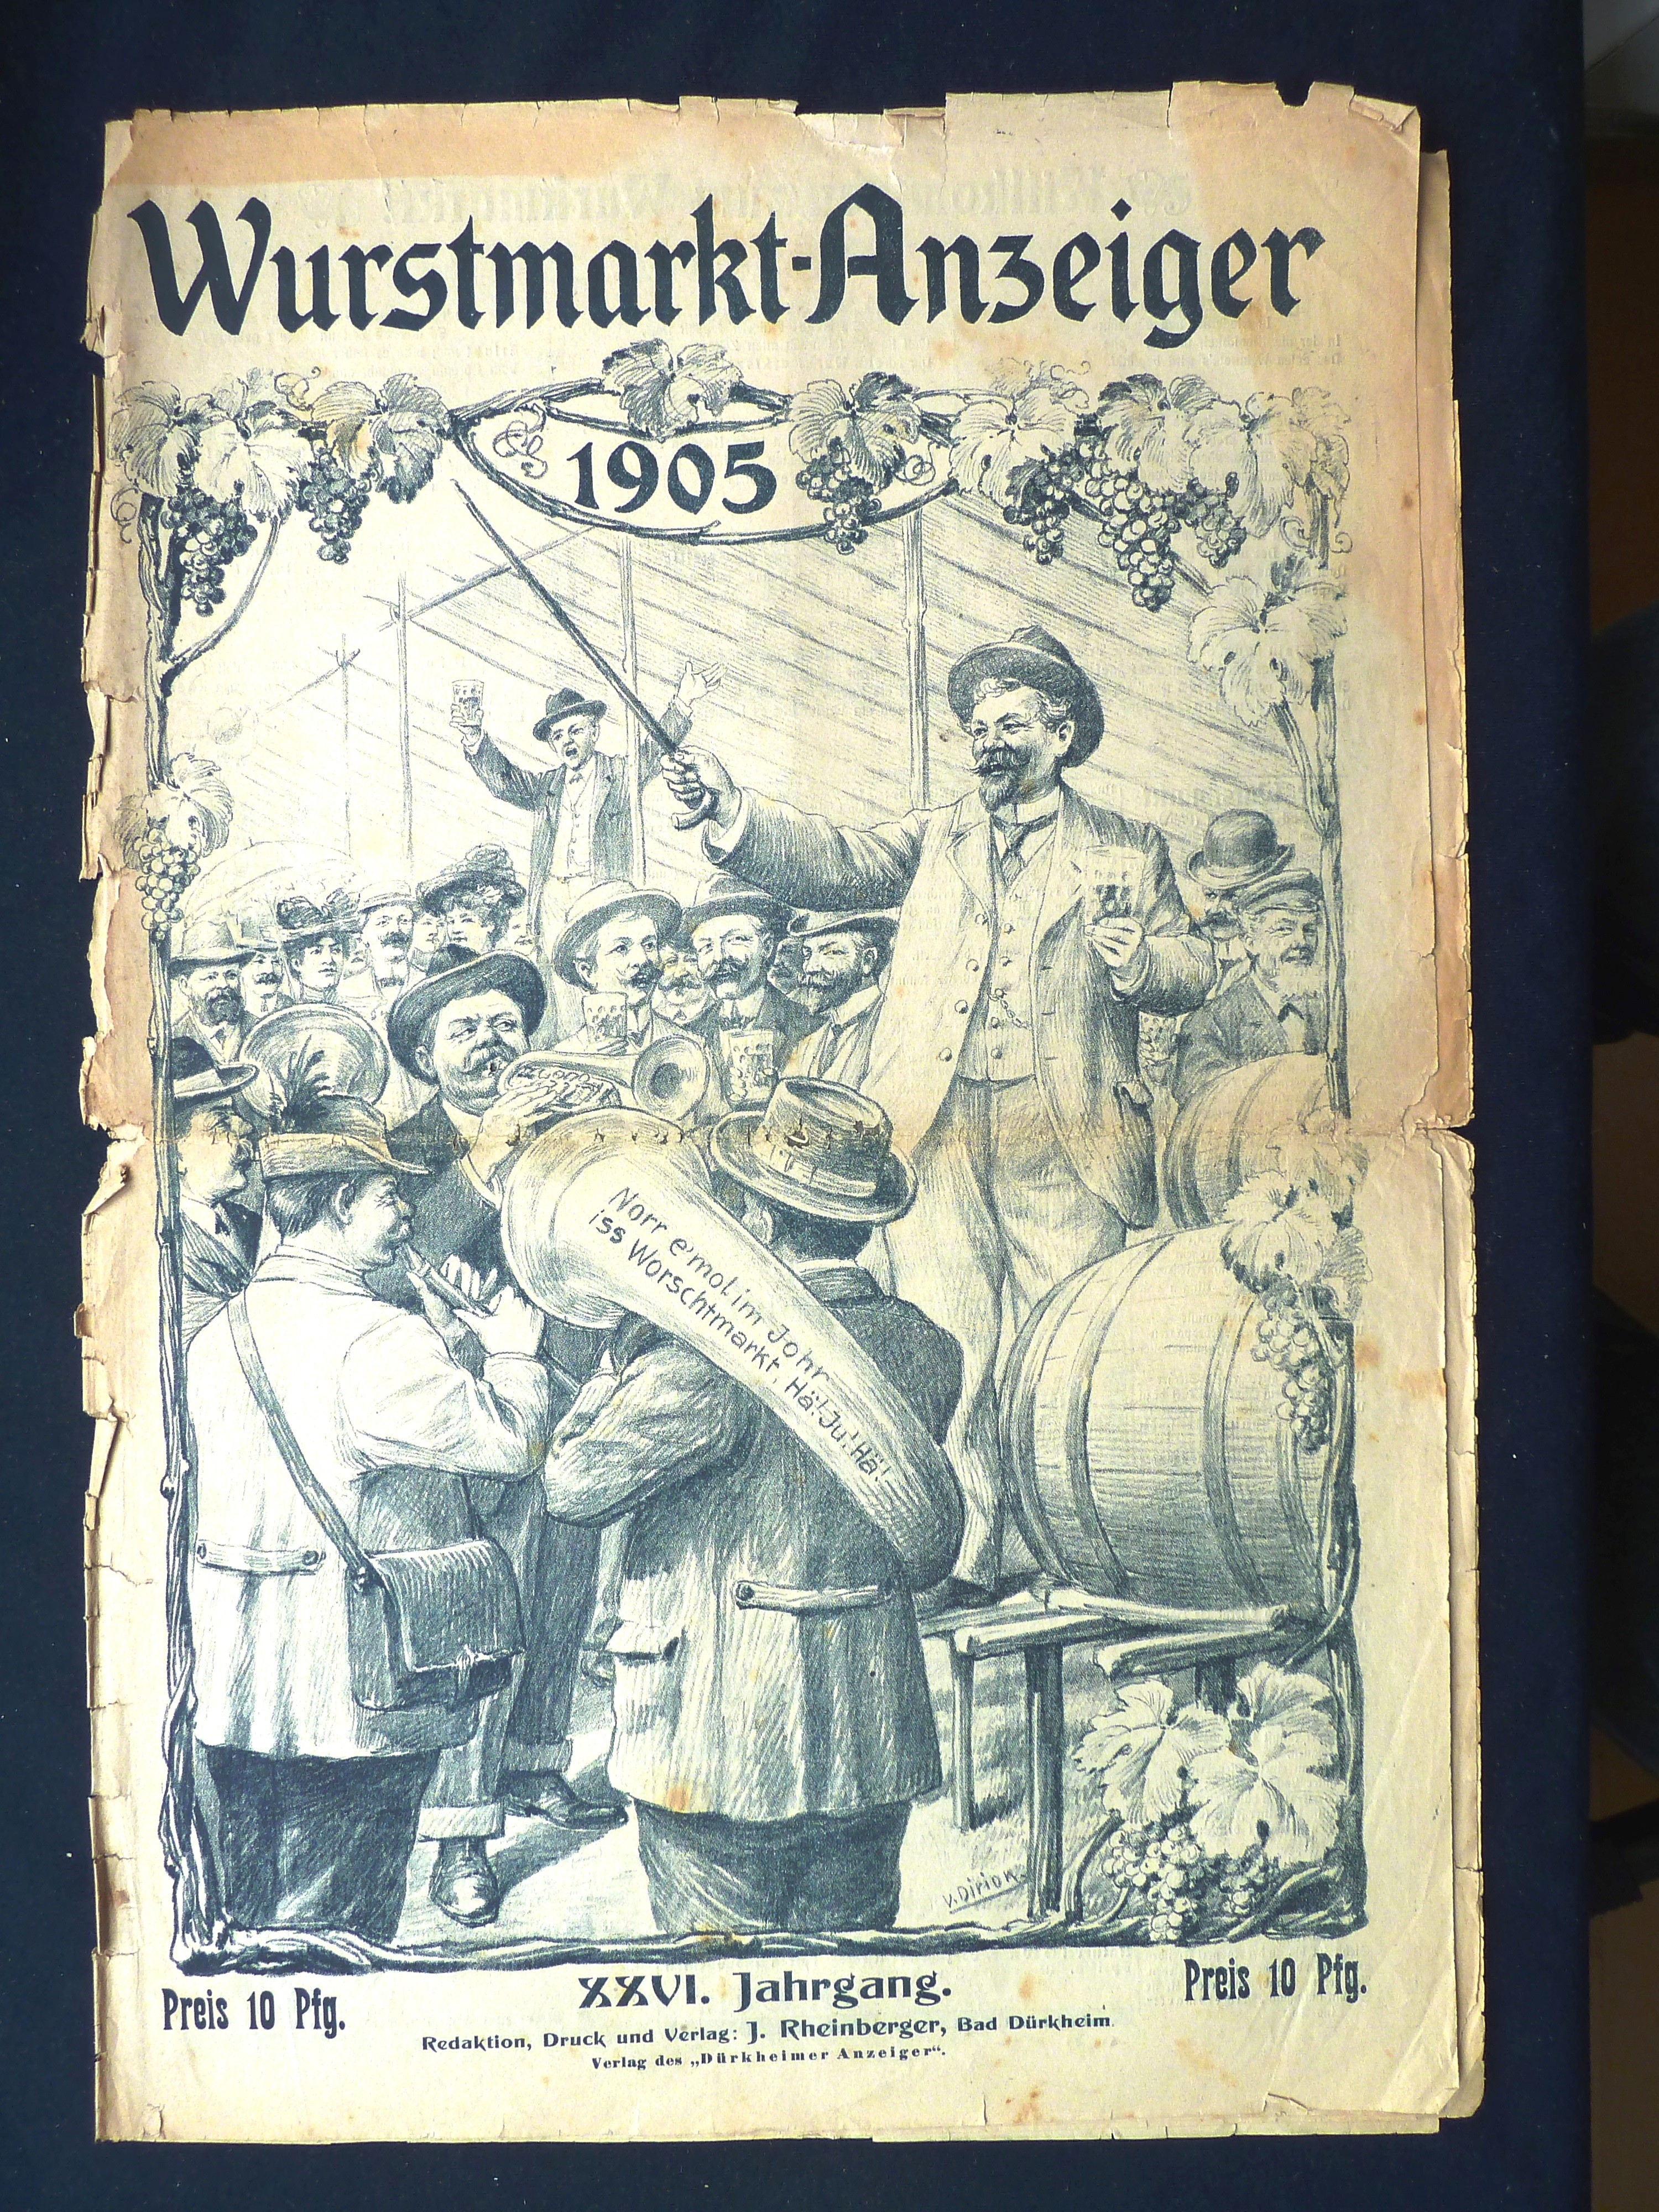 Zeitung; Anzeiger: "Wurstmarkt-Anzeiger"; J. Rheinberger, V. Dirion; Dürkheim a/H.; 1905 (Stadtmuseum Bad Dürkheim, Museumsgesellschaft Bad Dürkheim e.V. CC BY-NC-SA)